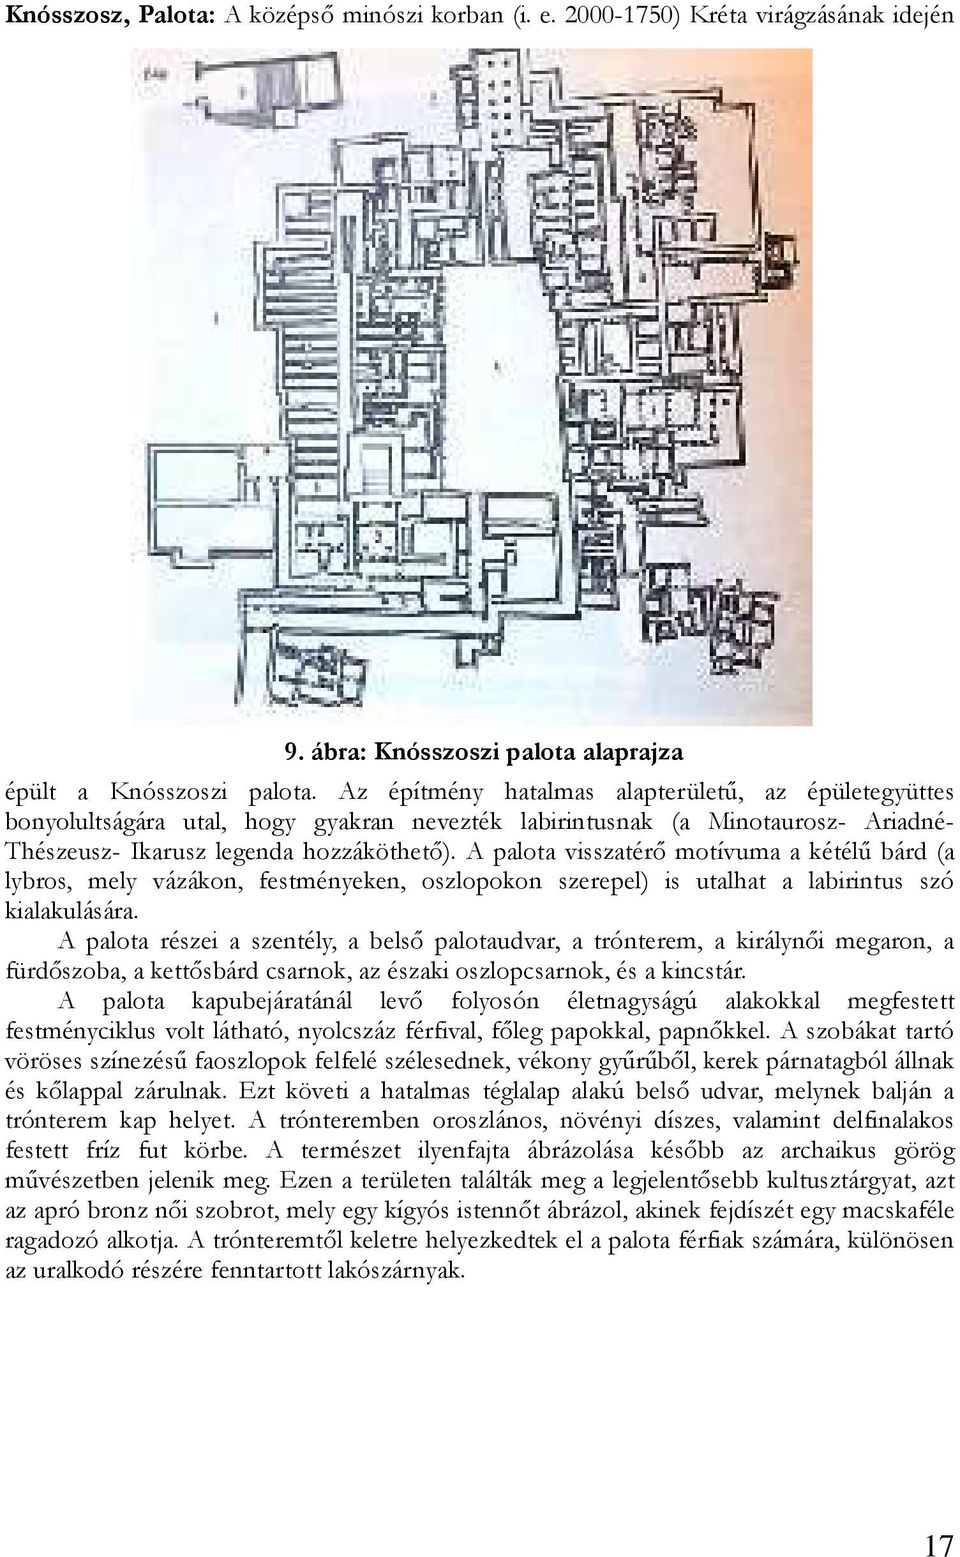 A palota visszatérı motívuma a kétélő bárd (a lybros, mely vázákon, festményeken, oszlopokon szerepel) is utalhat a labirintus szó kialakulására.